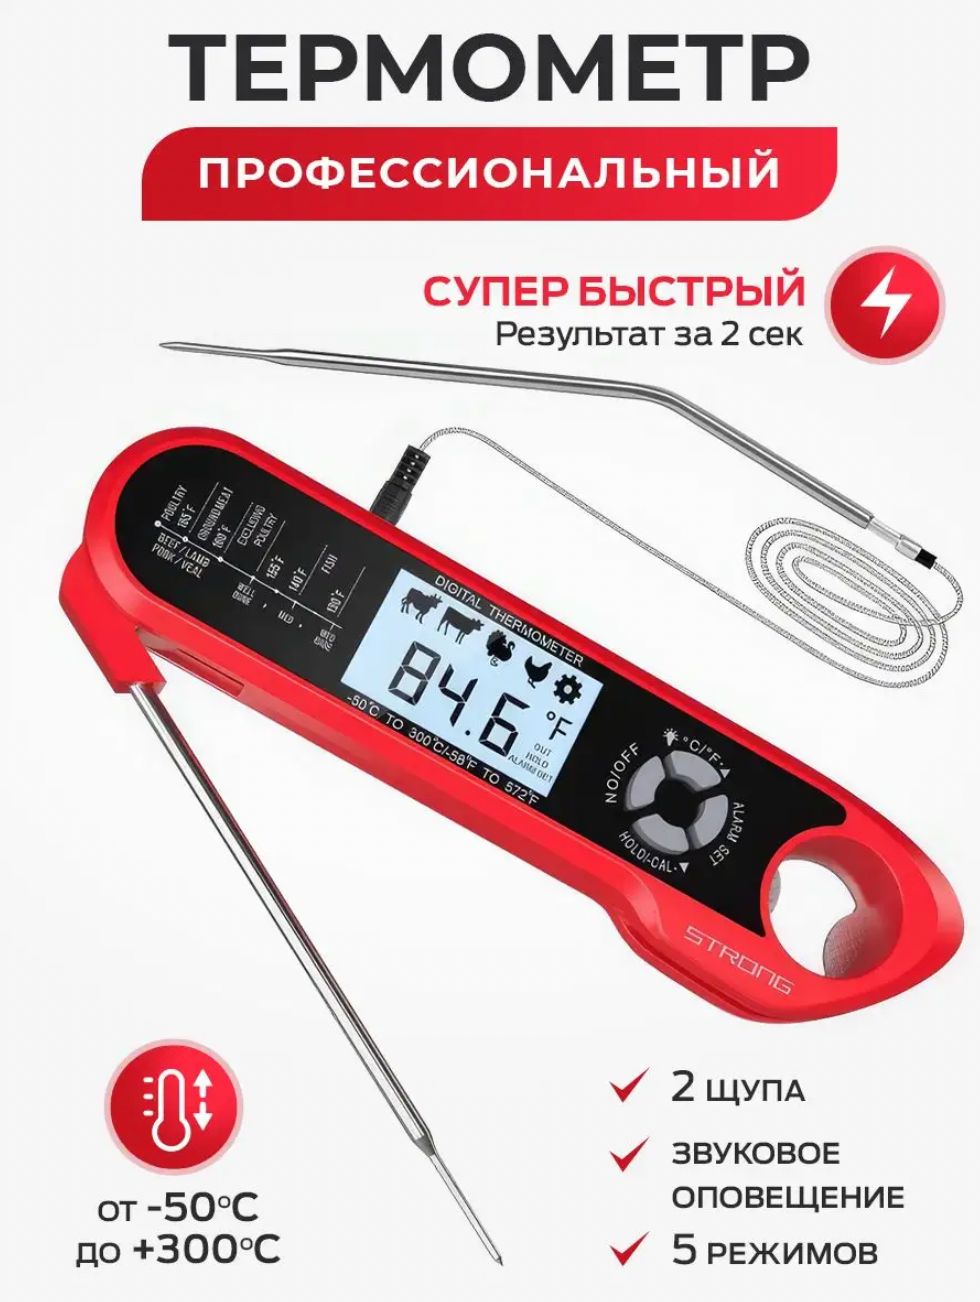 Кулинарный термометр с двумя щупами, FM-004